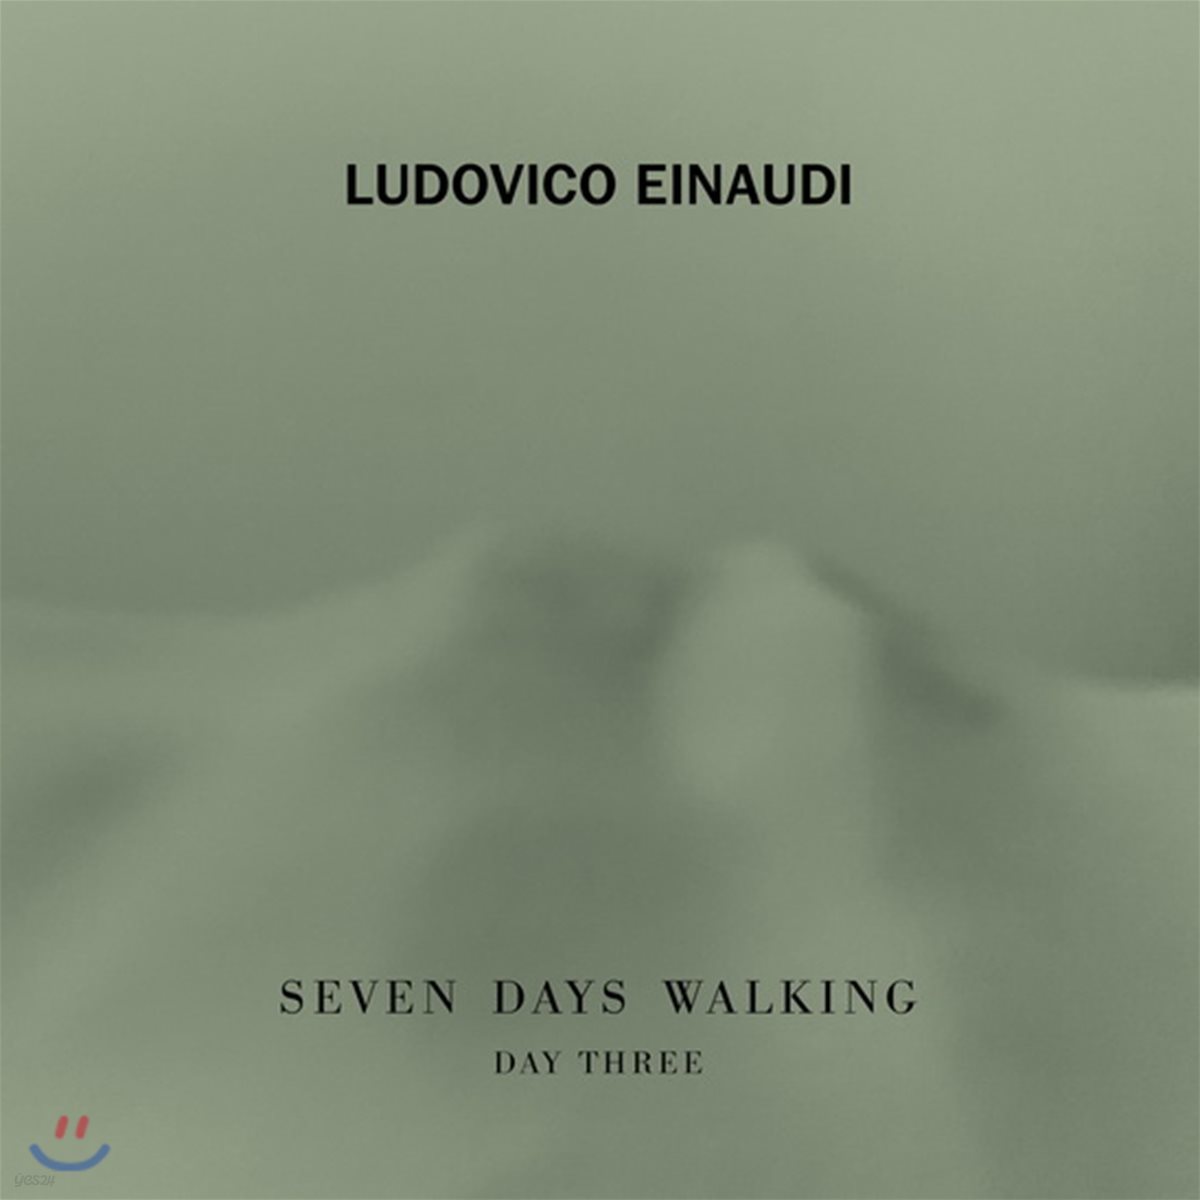 루도비코 에이나우디 - 7일 간의 산책, 세 번째 날 (Ludovico Einaudi - Seven Days Walking, Day 3)